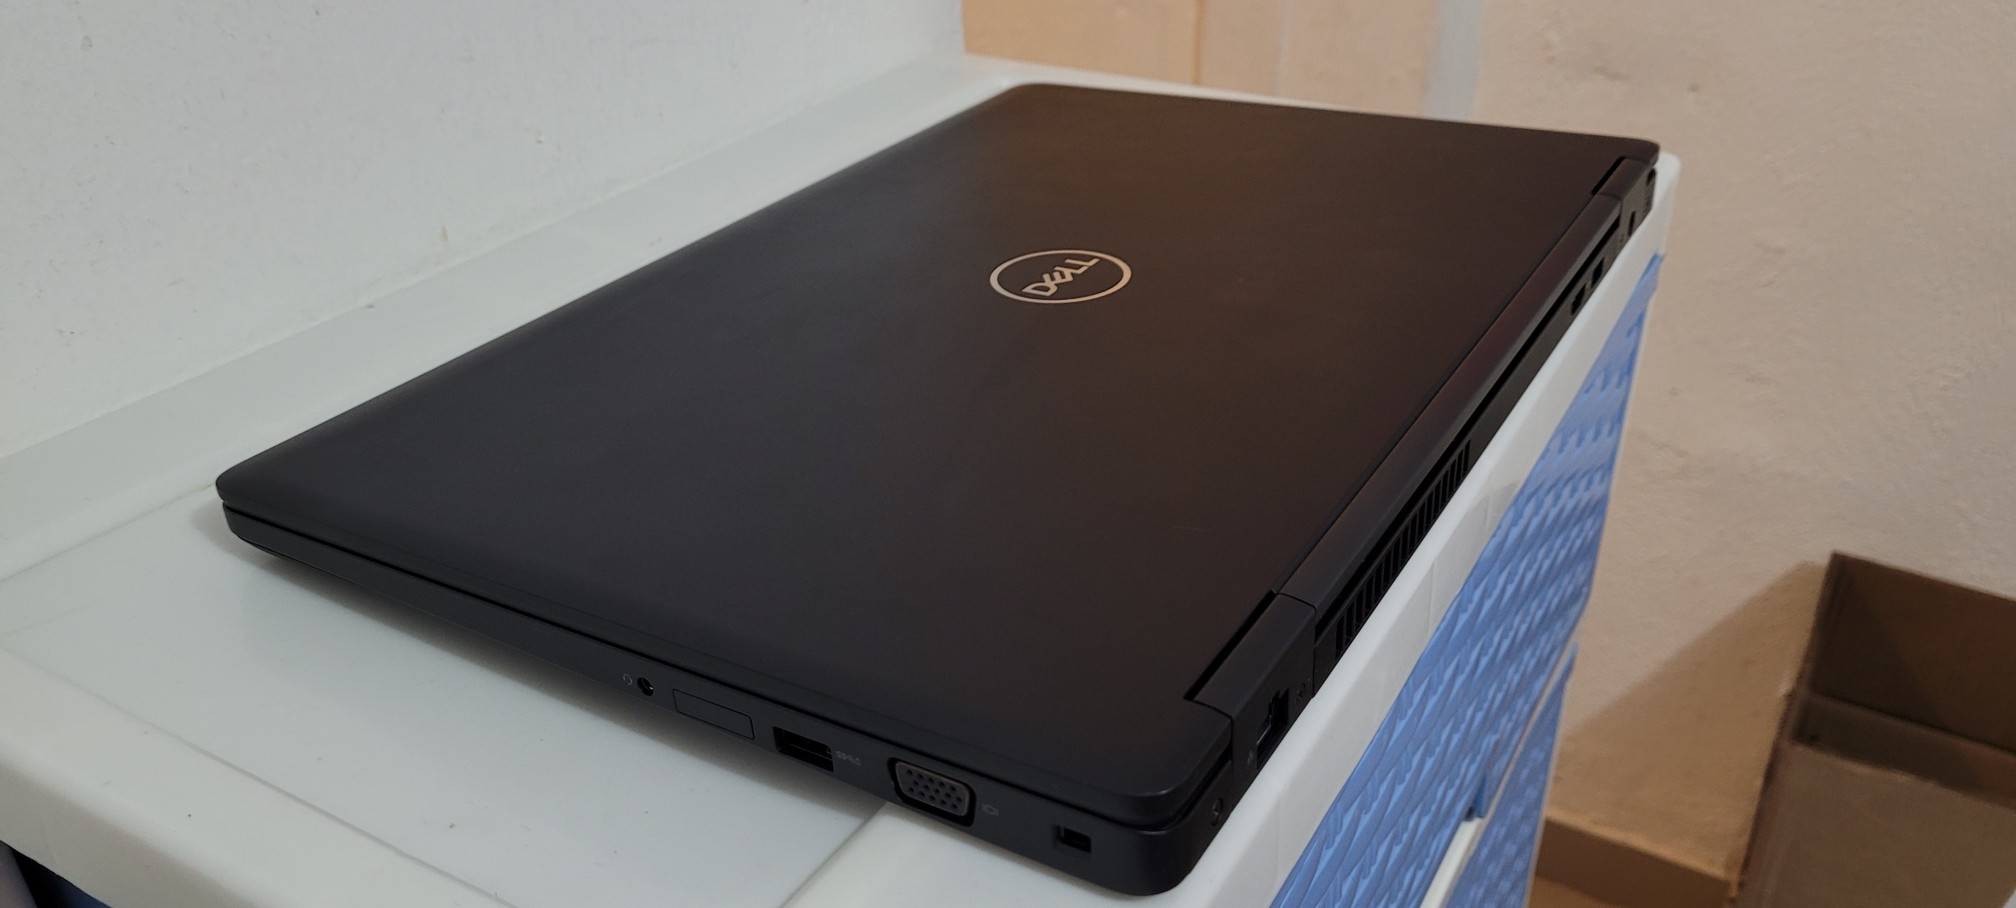 computadoras y laptops - Dell 5570 17 Pulg Core i7 6ta Ram 16gb ddr4 Video intel 8gb y Aty Radeon R7 2gb 2